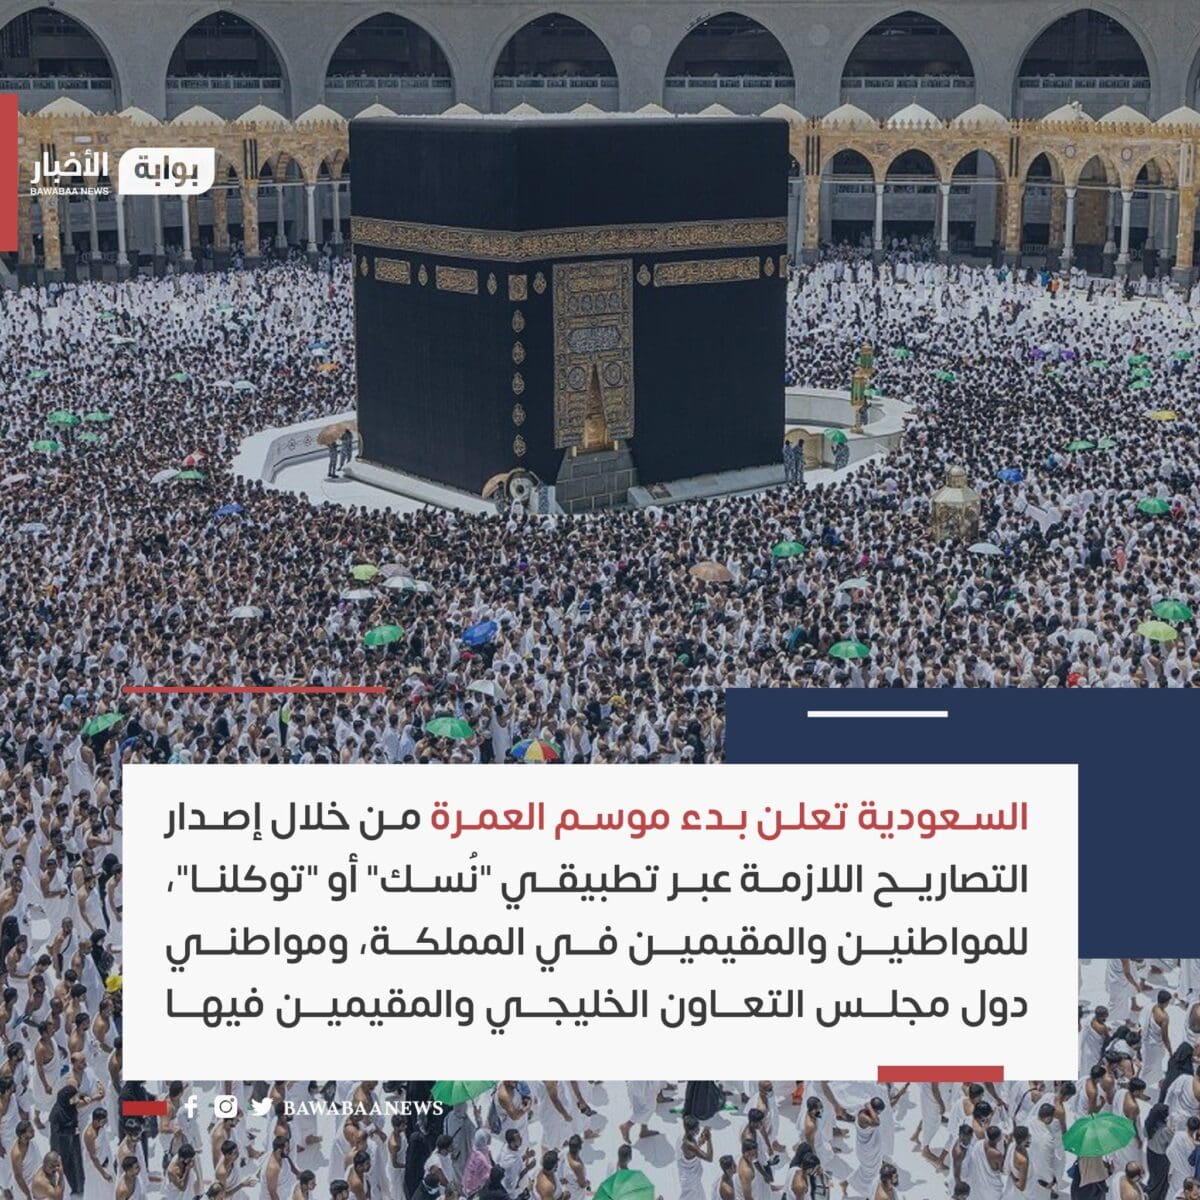 وزارة الحج السعودية تكشف تفاصيل بدء موسم العمرة للمواطنين والمقيمين والخليجيين